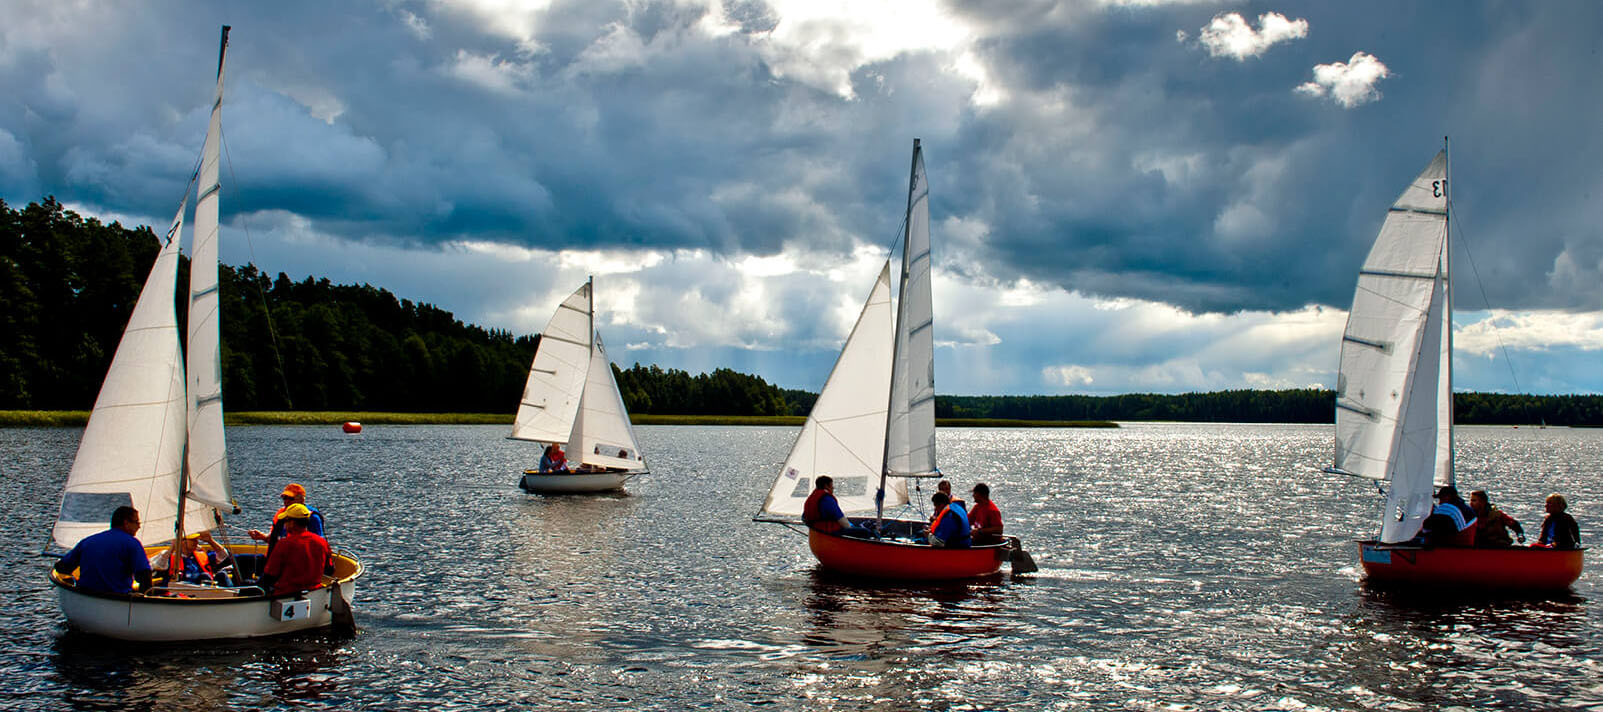 Alternative sailing - Ośrodek wypoczynkowy Kukle